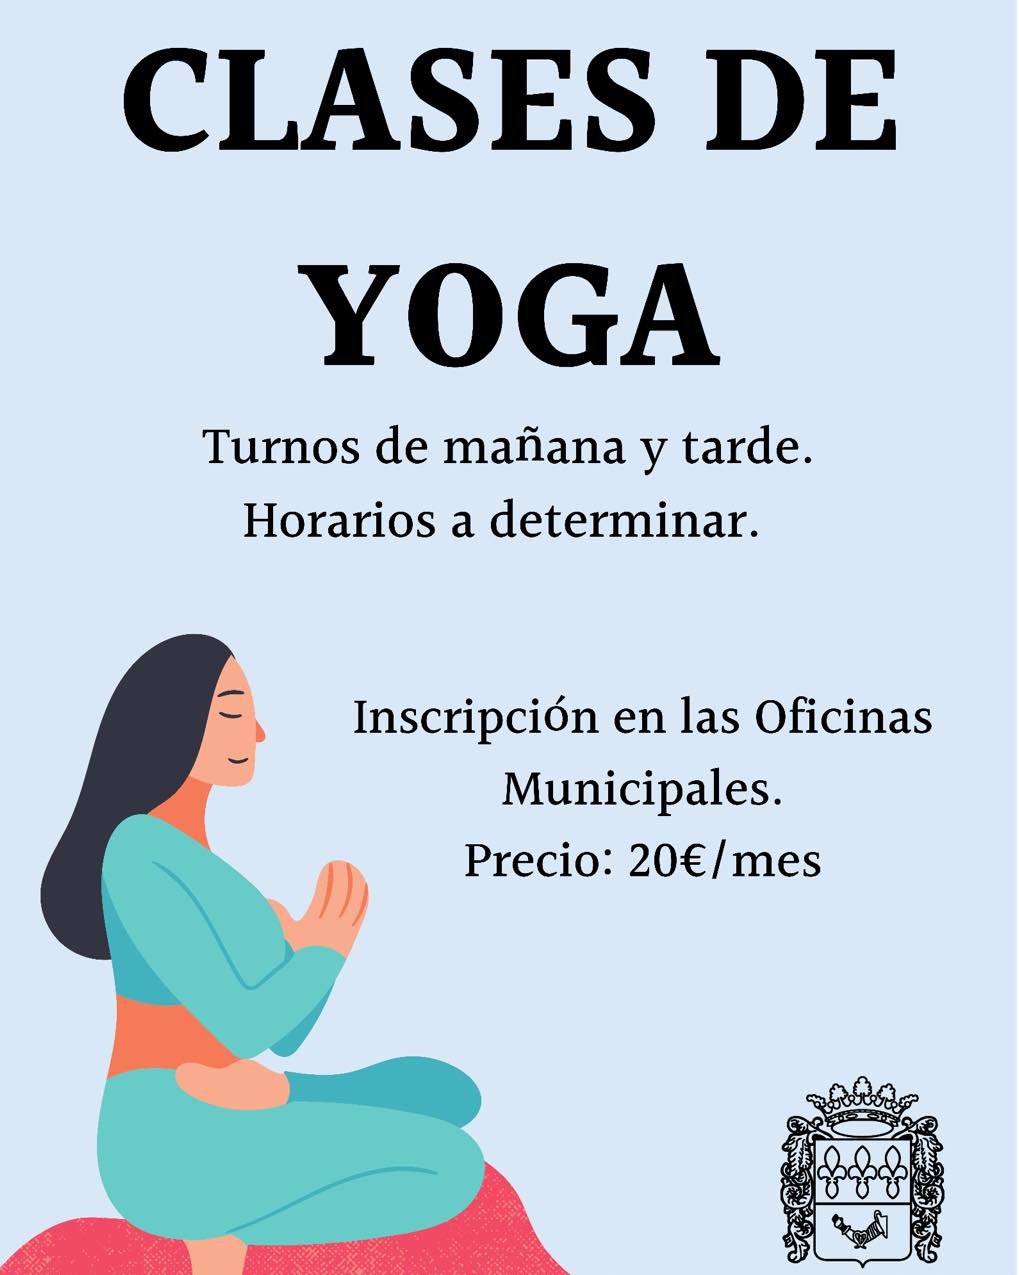 Clases de yoga (2021) - Villatobas (Toledo)